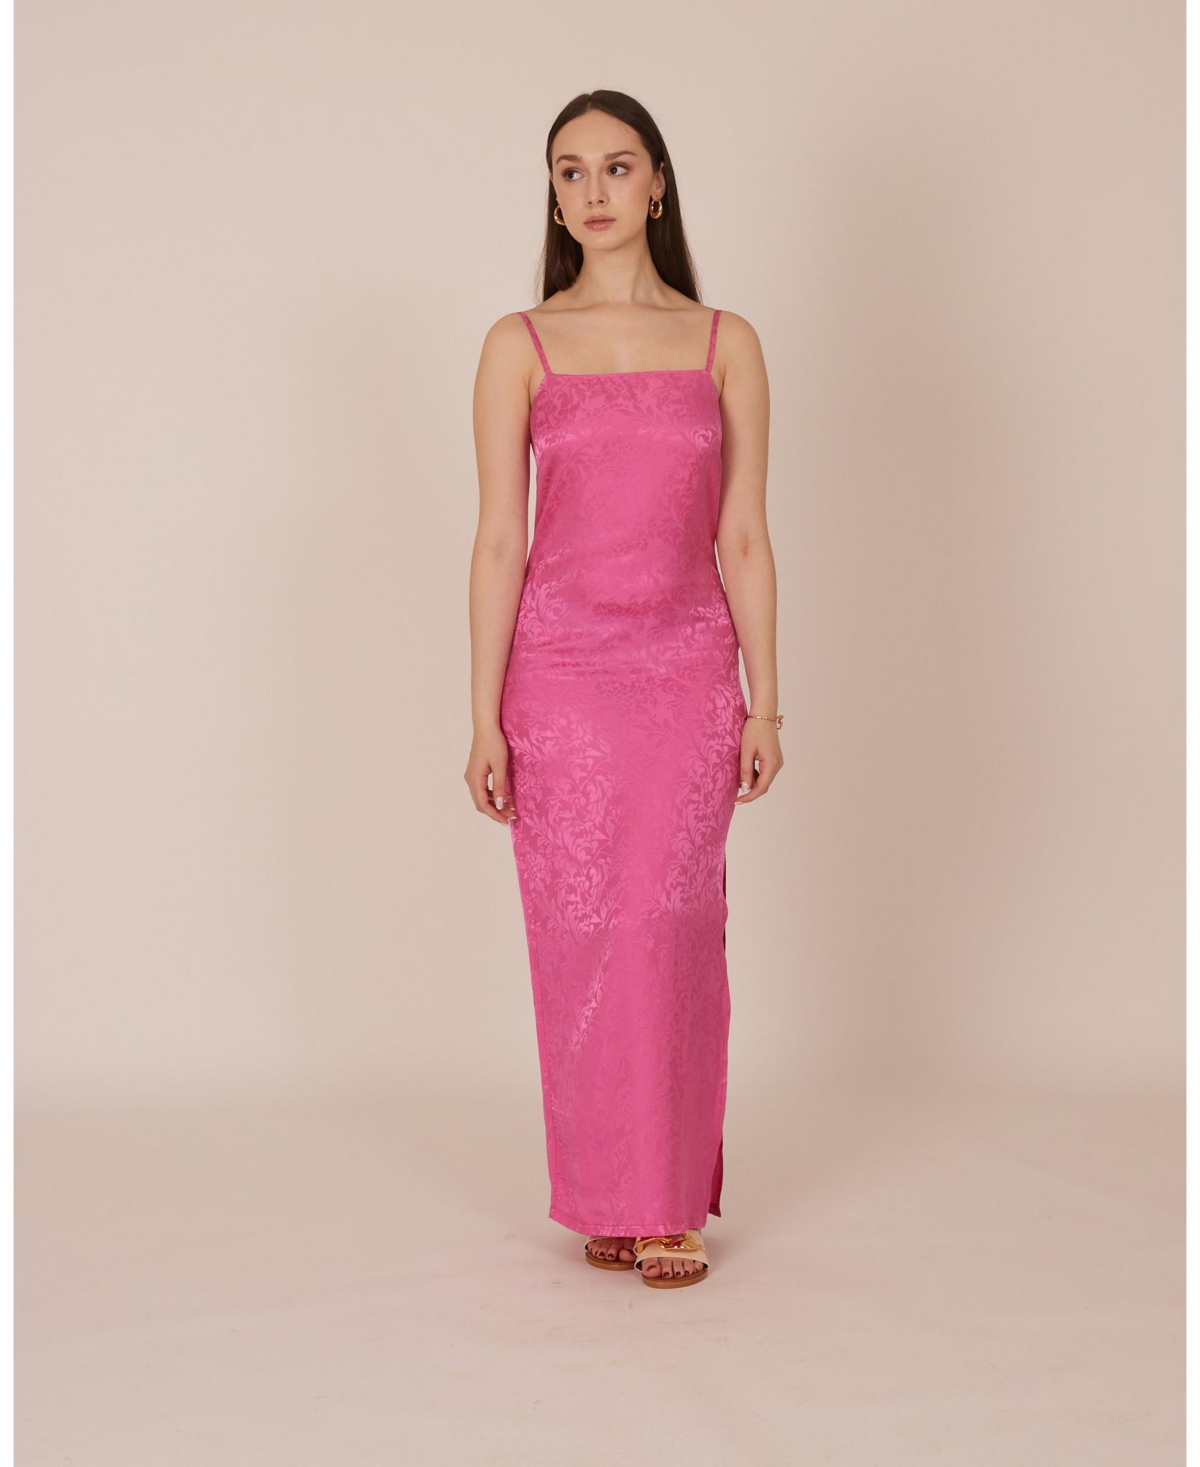 Floral Slip Dress - Hot pink